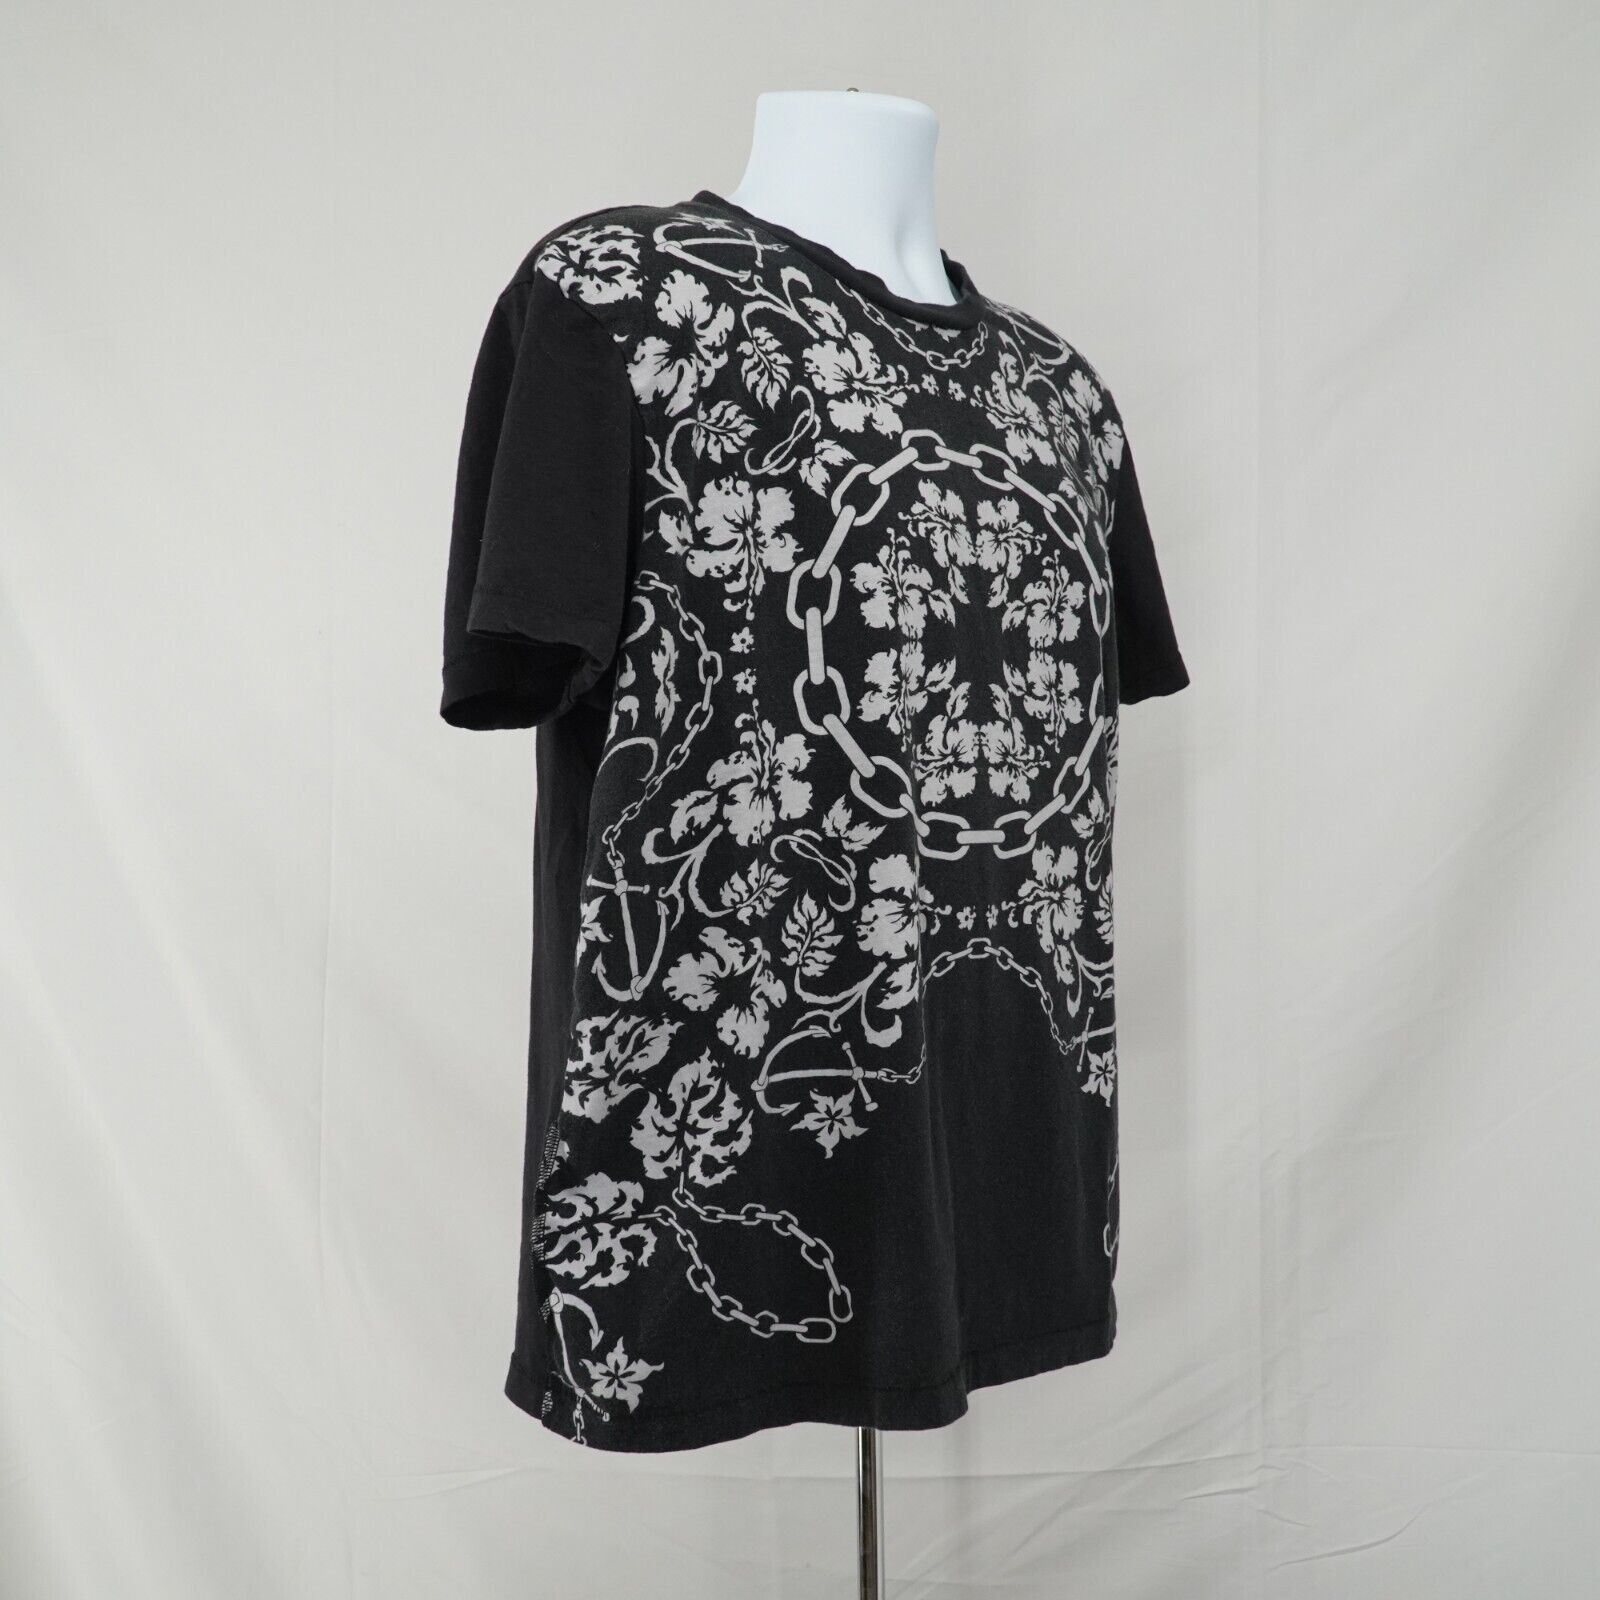 Black White Printed Shirt Floral Chains Anchor Hawaiian Tee - 14